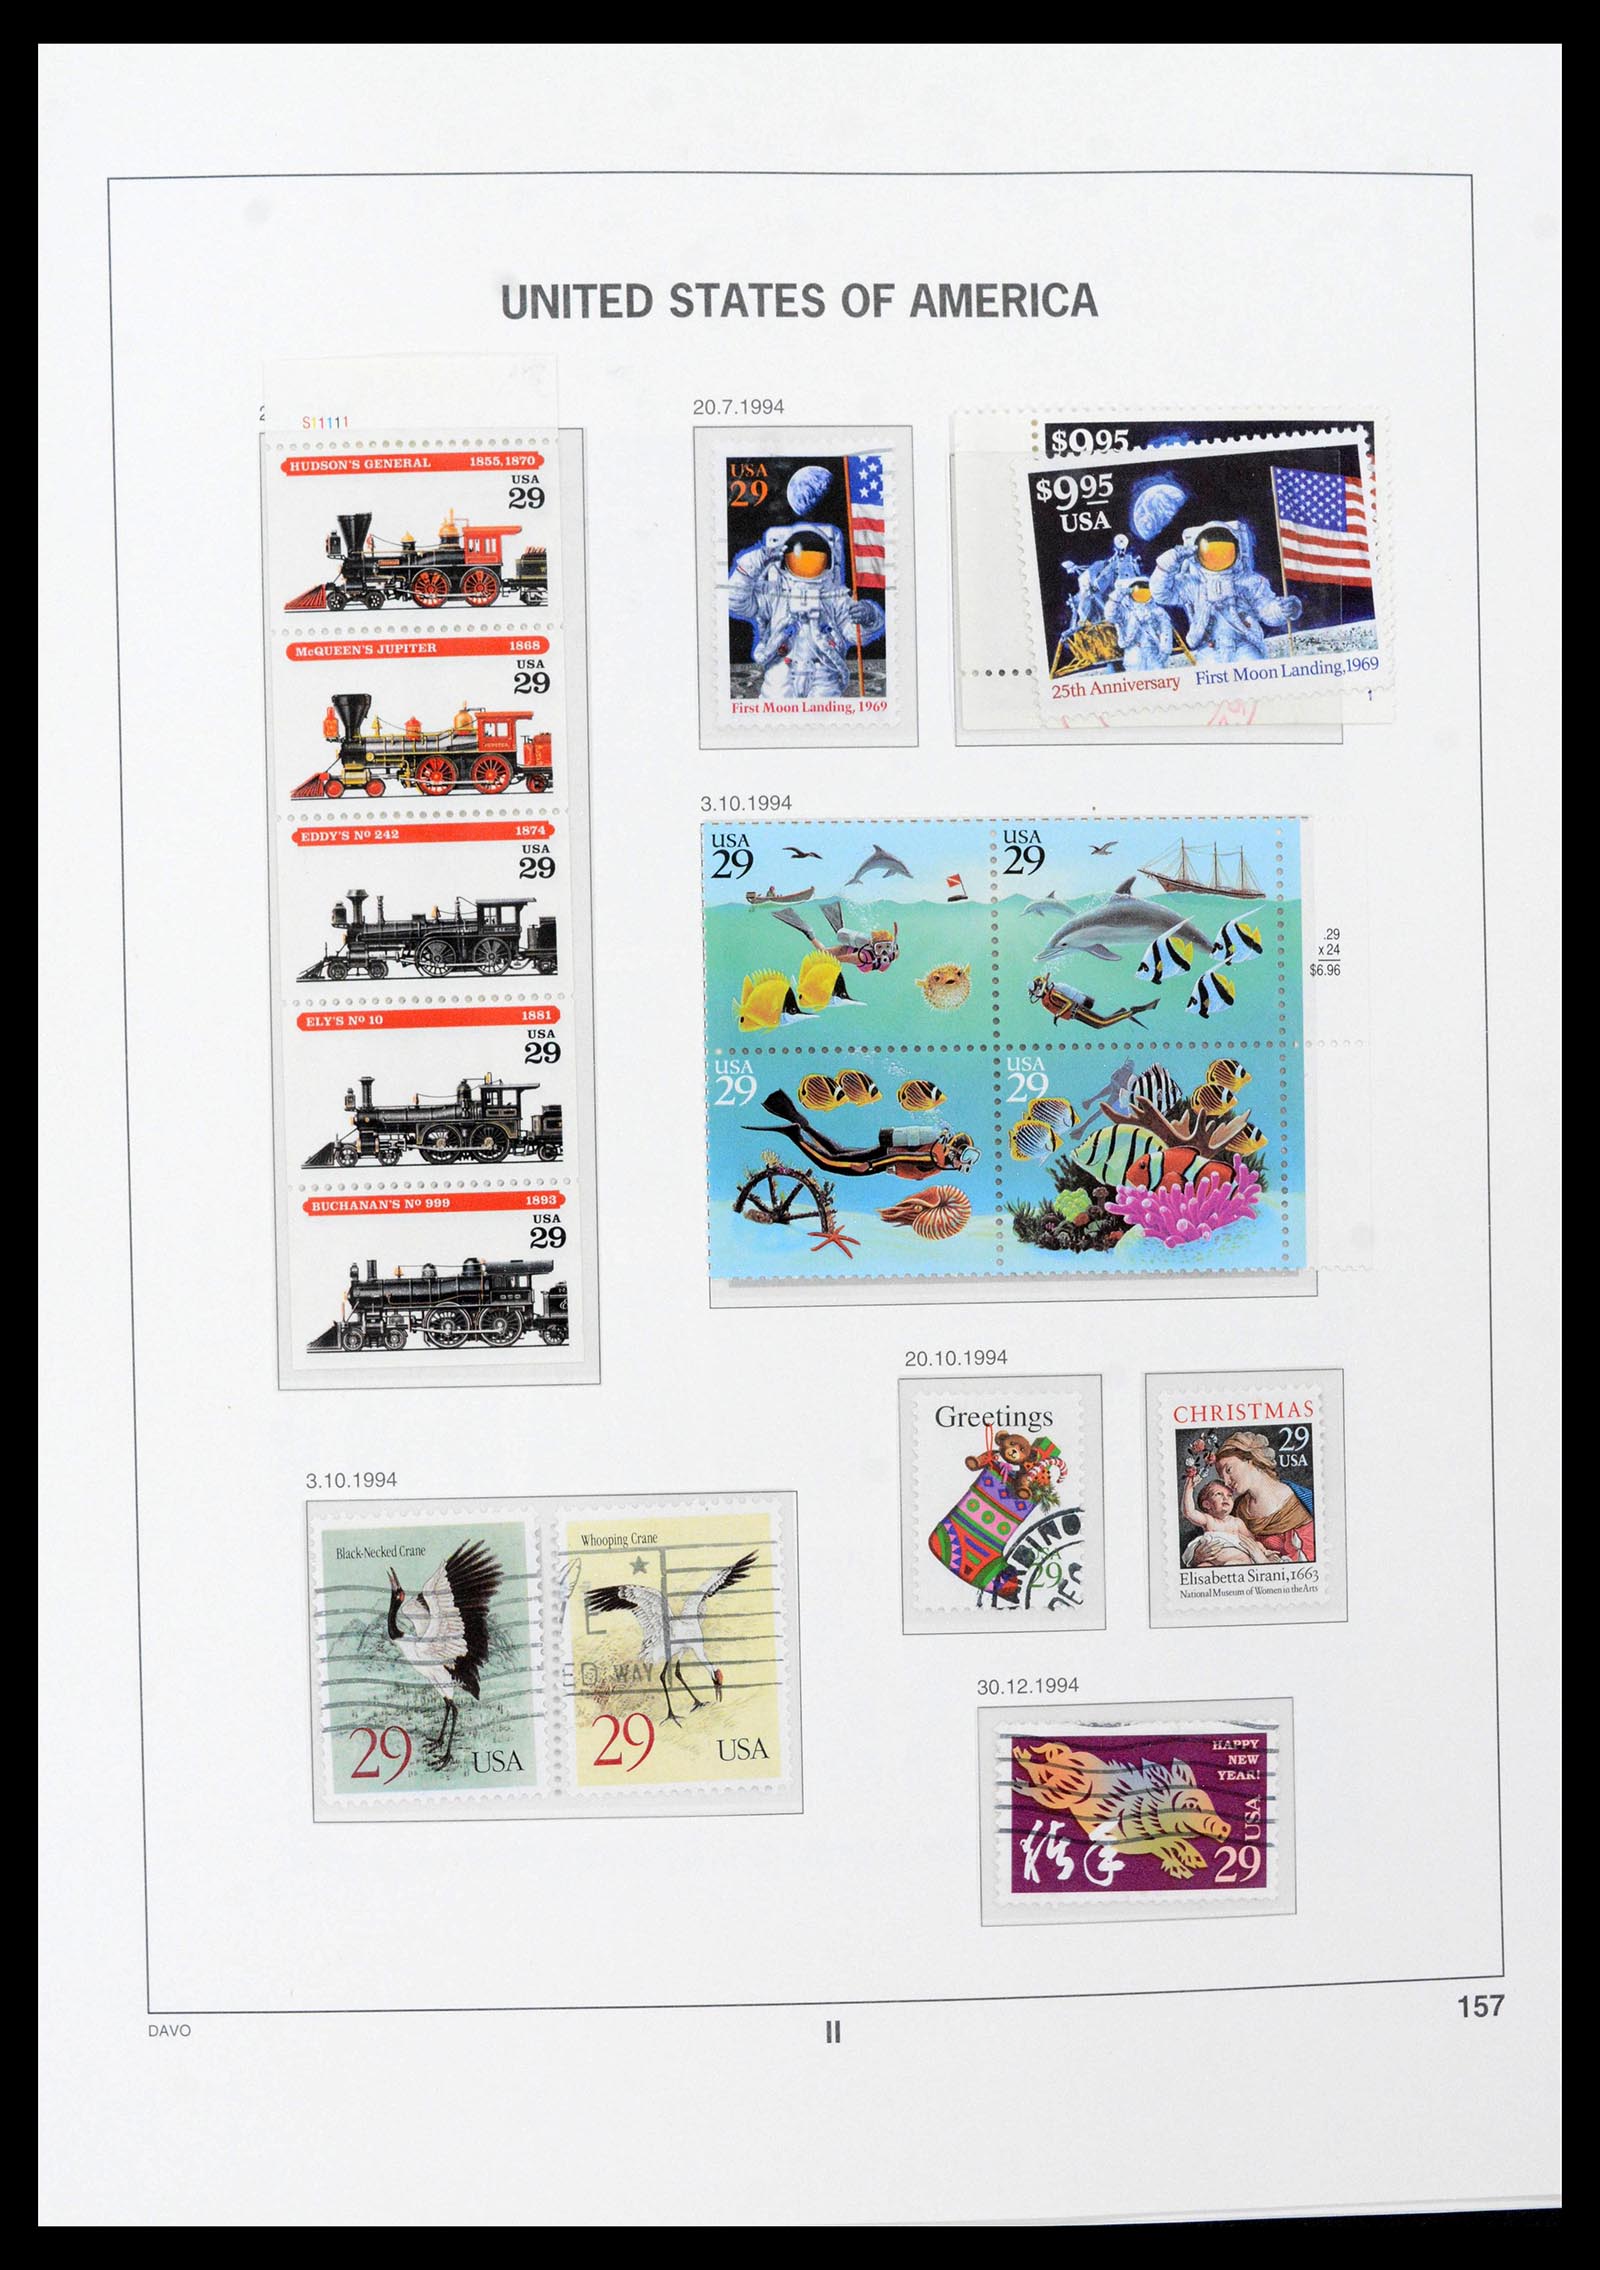 39349 0044 - Stamp collection 39349 USA 1989-2021!